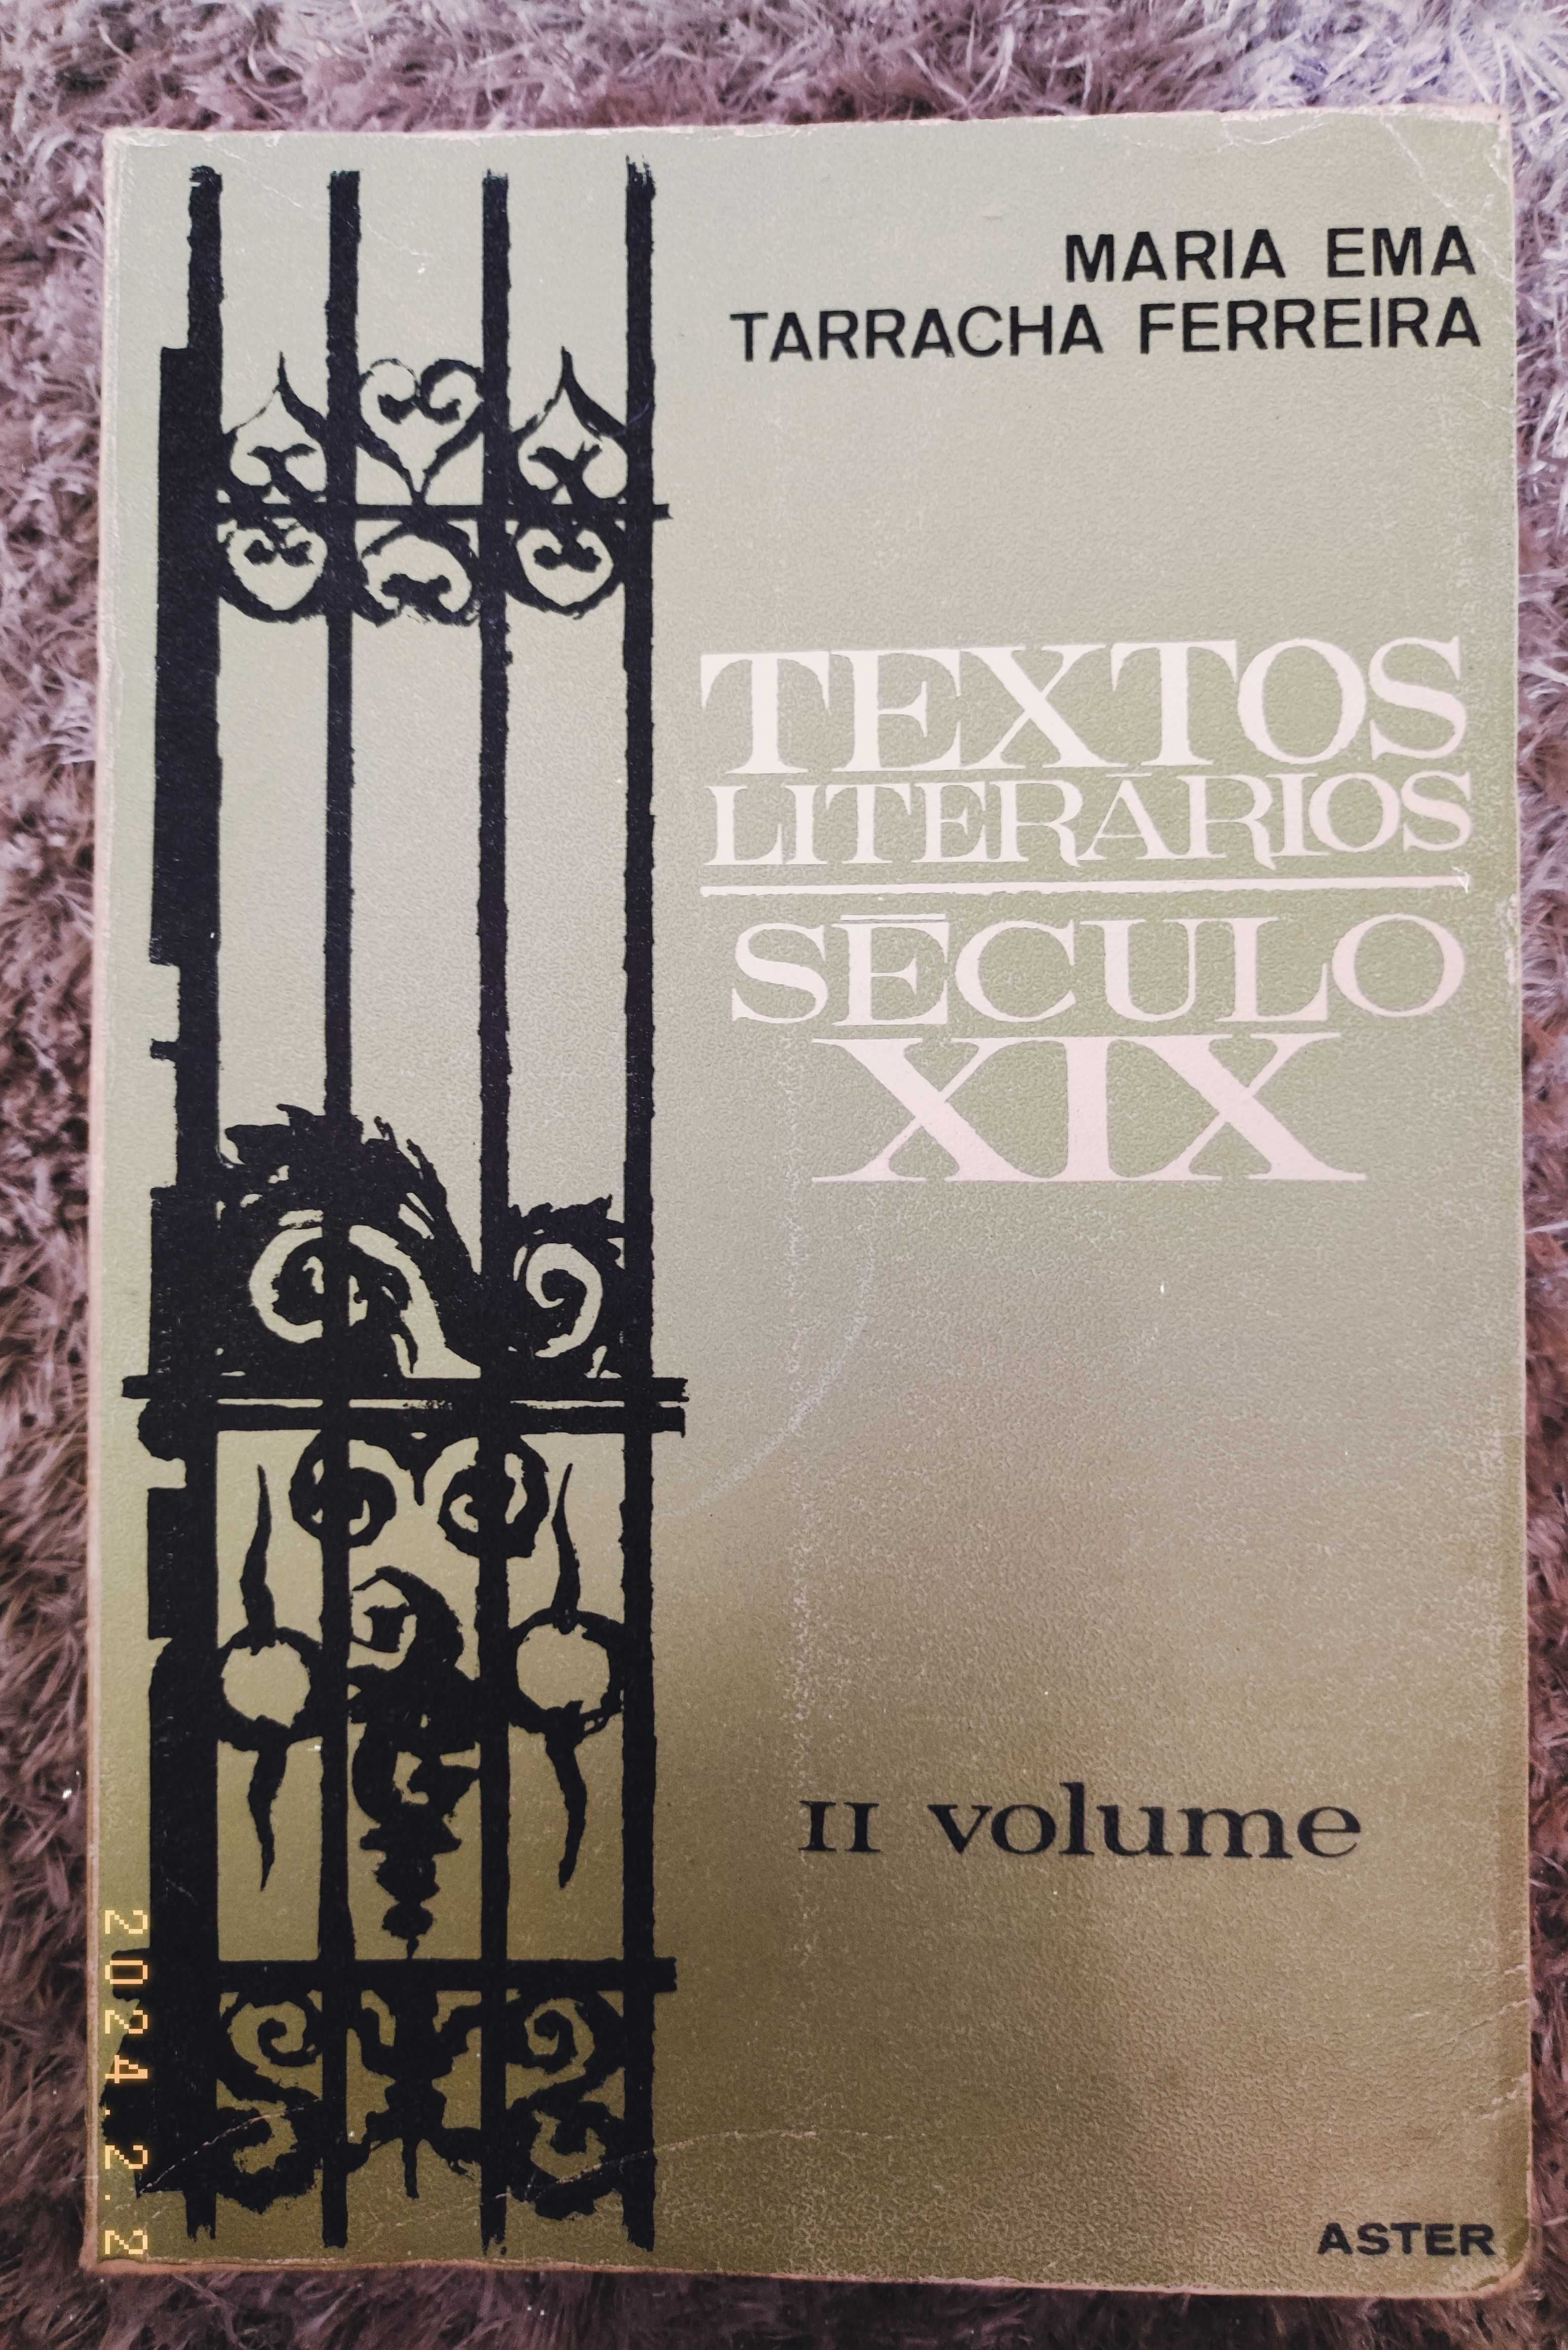 Textos literários do século XIX – Maria Ema Tarracha Ferreira c/portes